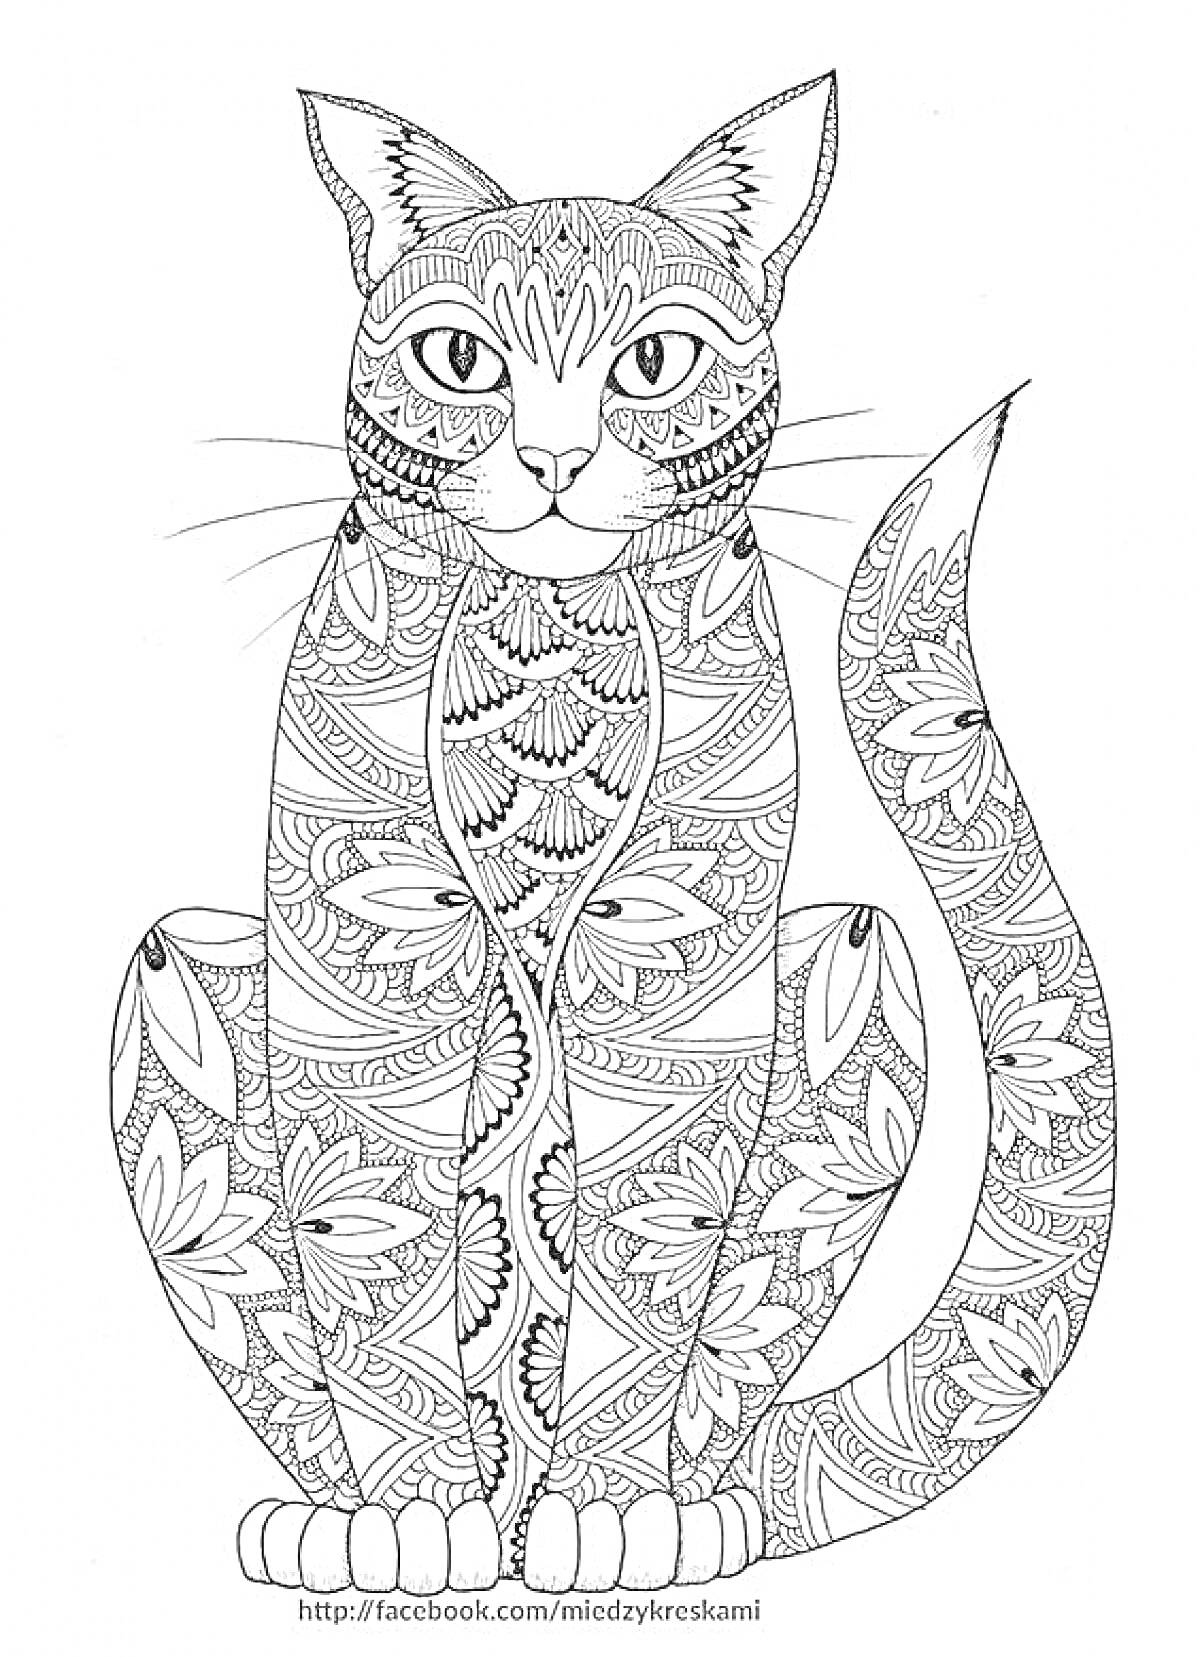 Кот с узорчатым телом, различные цветочные и абстрактные узоры на всем теле